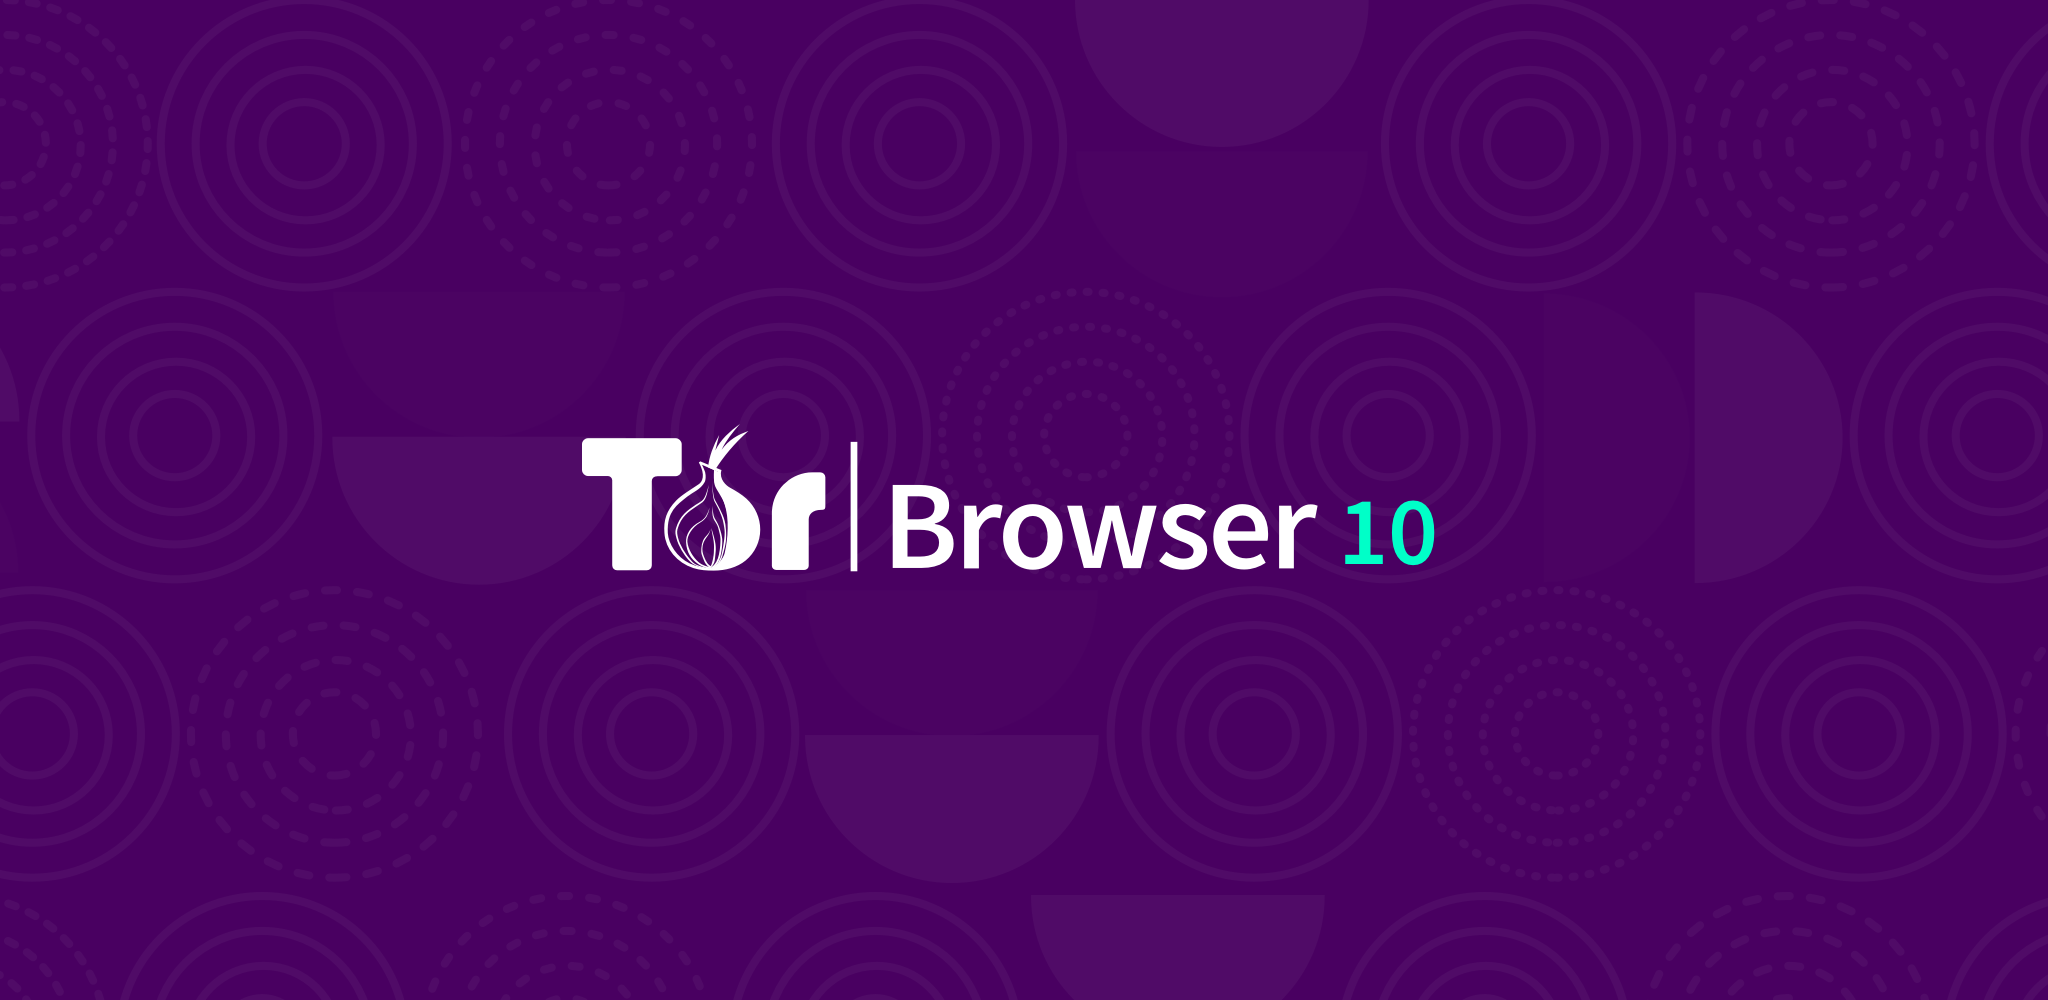 Tor browser 5 0 mega tor darknet мега